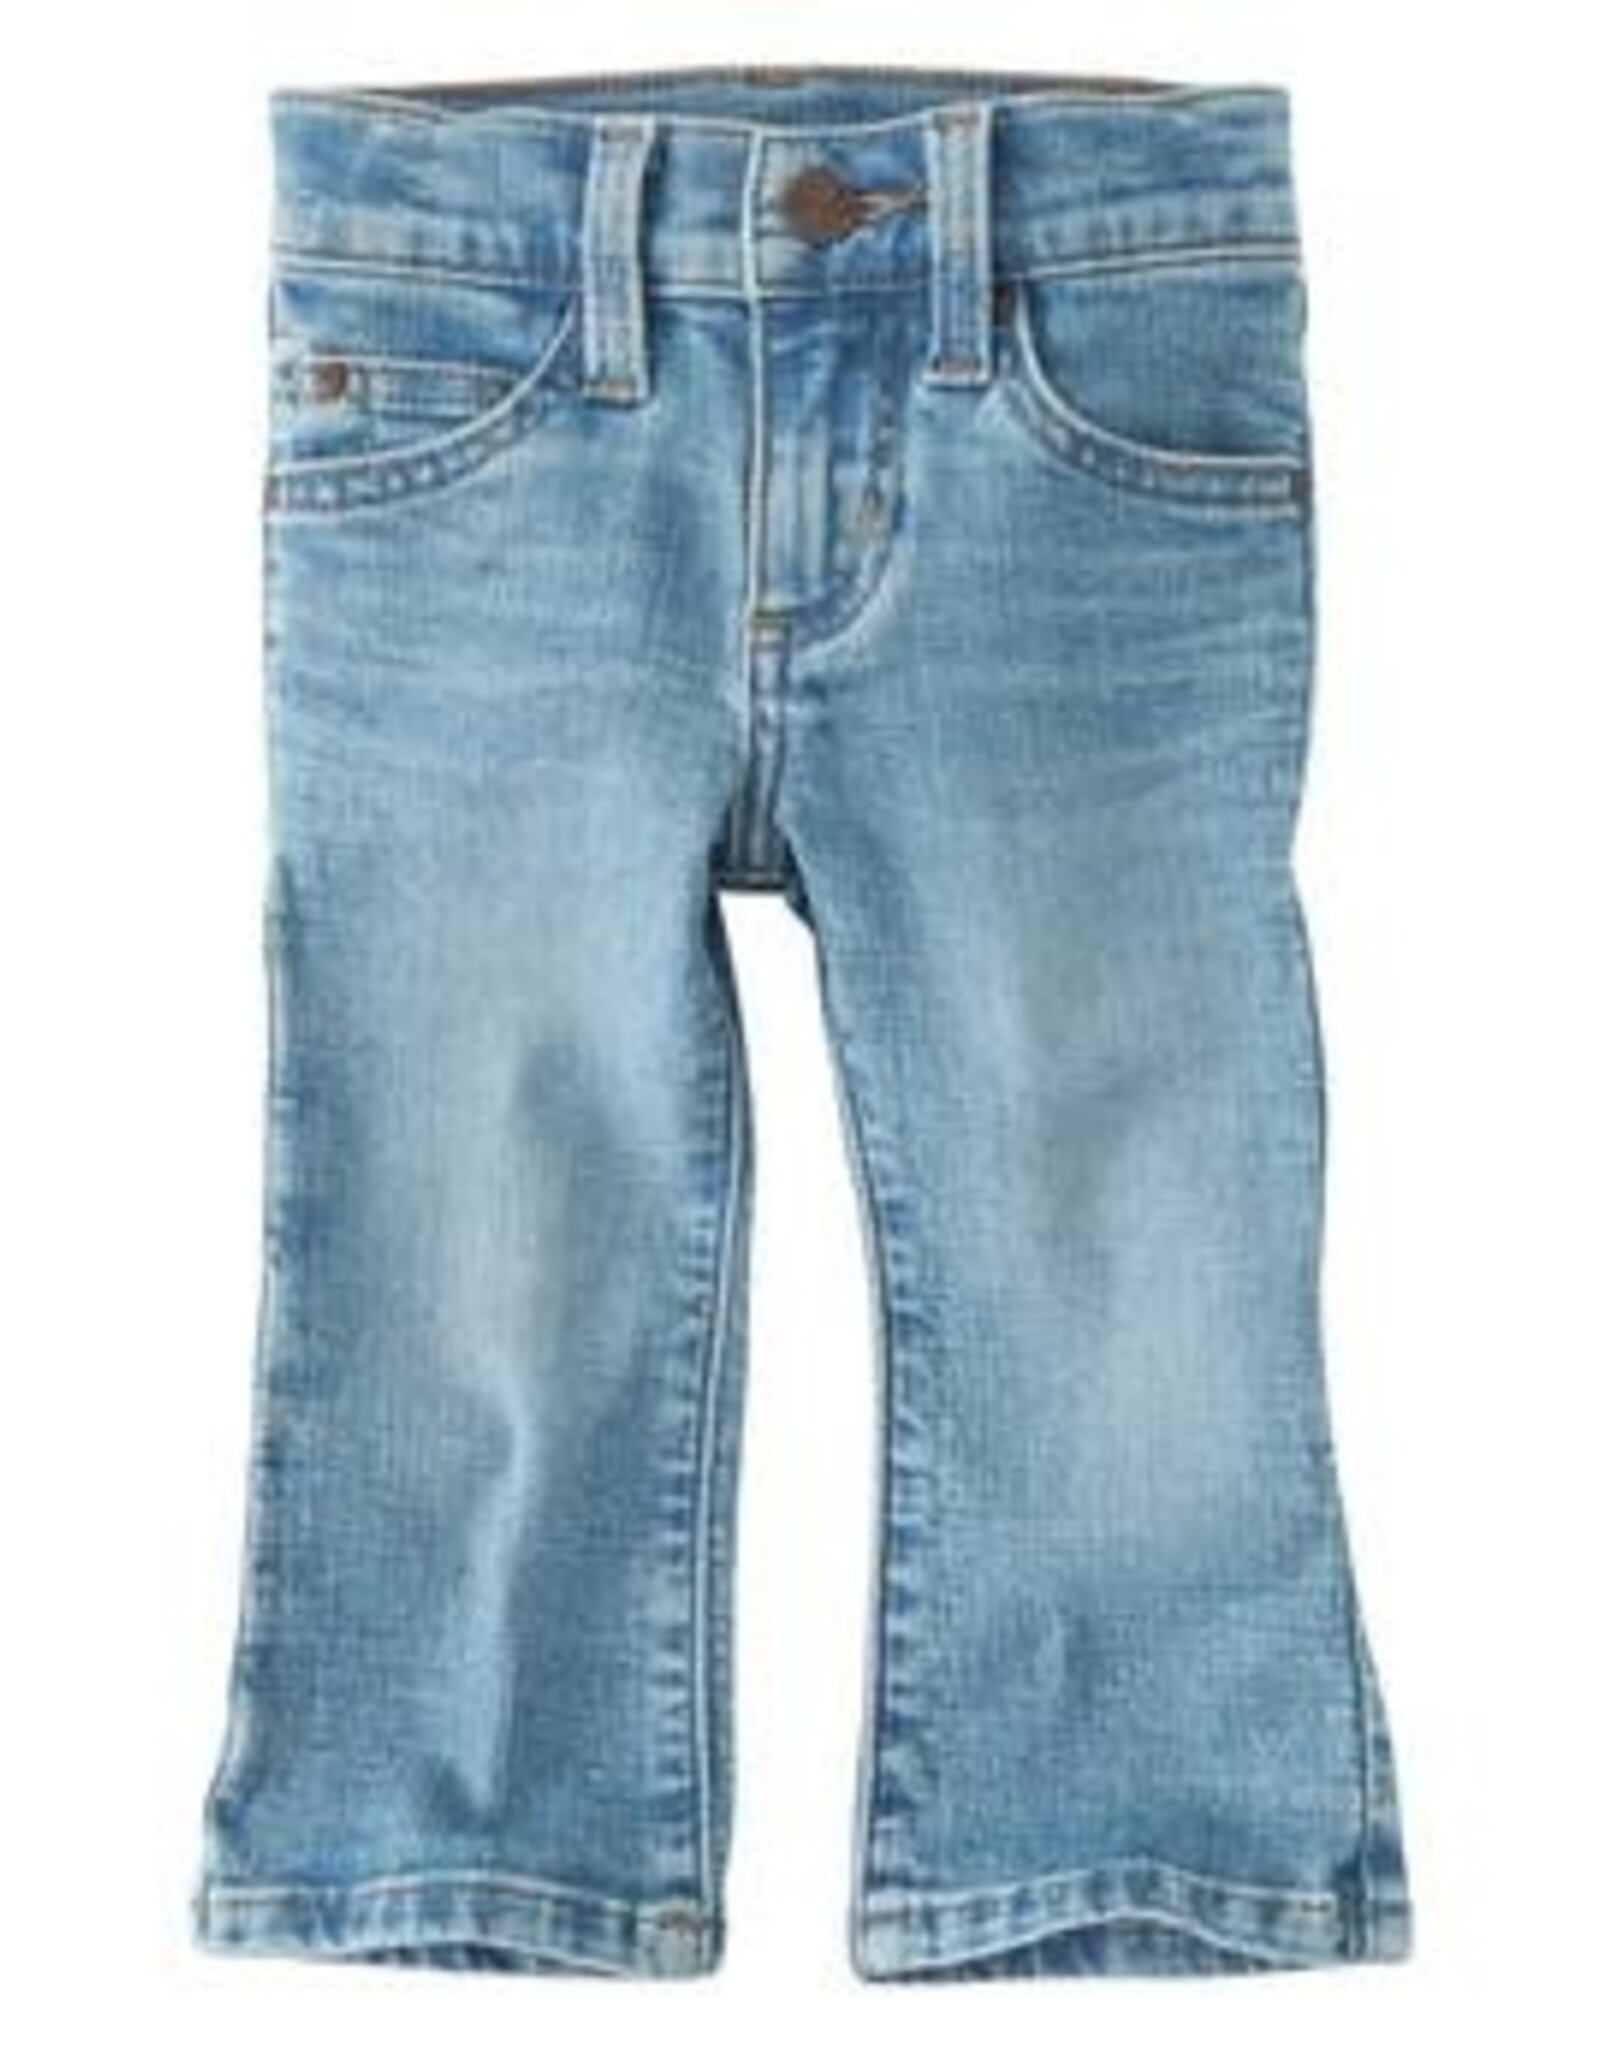 Wrangler Infant / Toddler Boys Medium Wash Denim Jeans